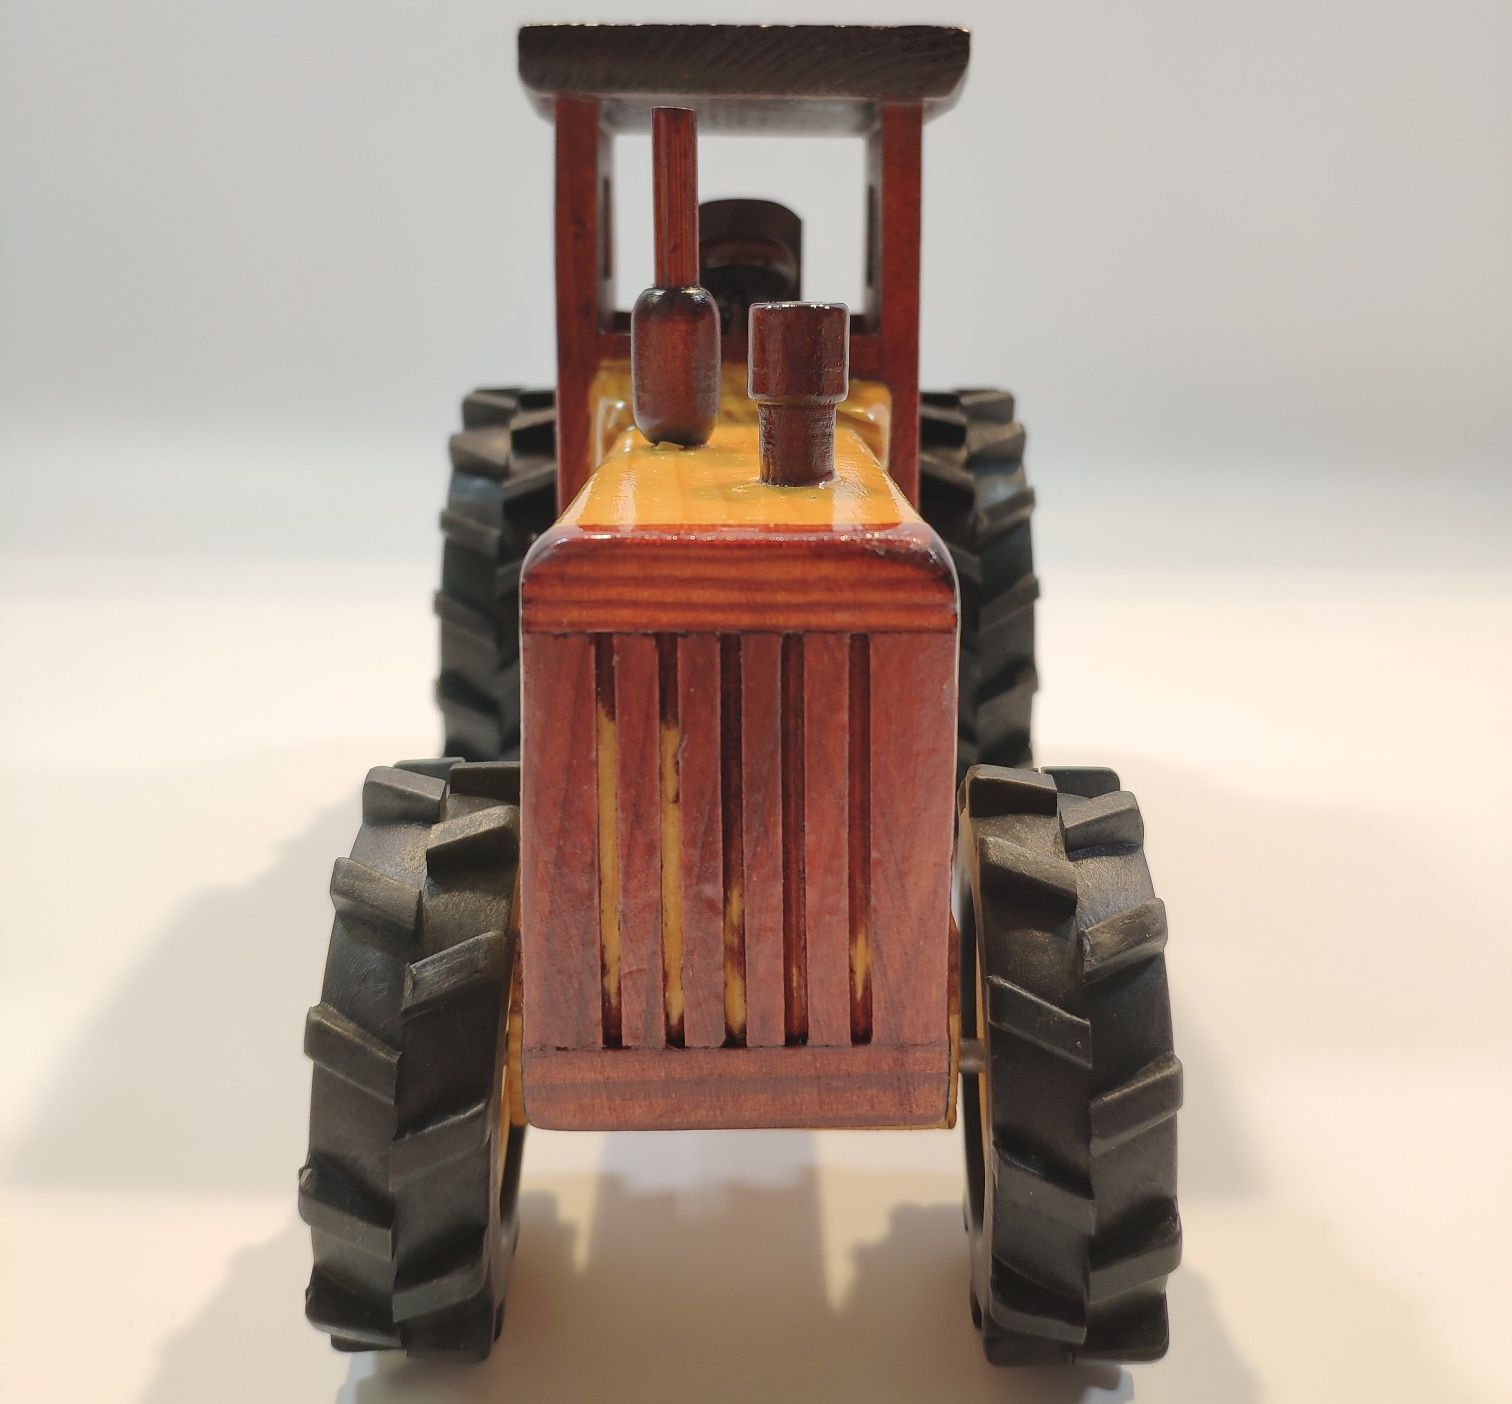 Drewniany model - traktor model z kabiną A